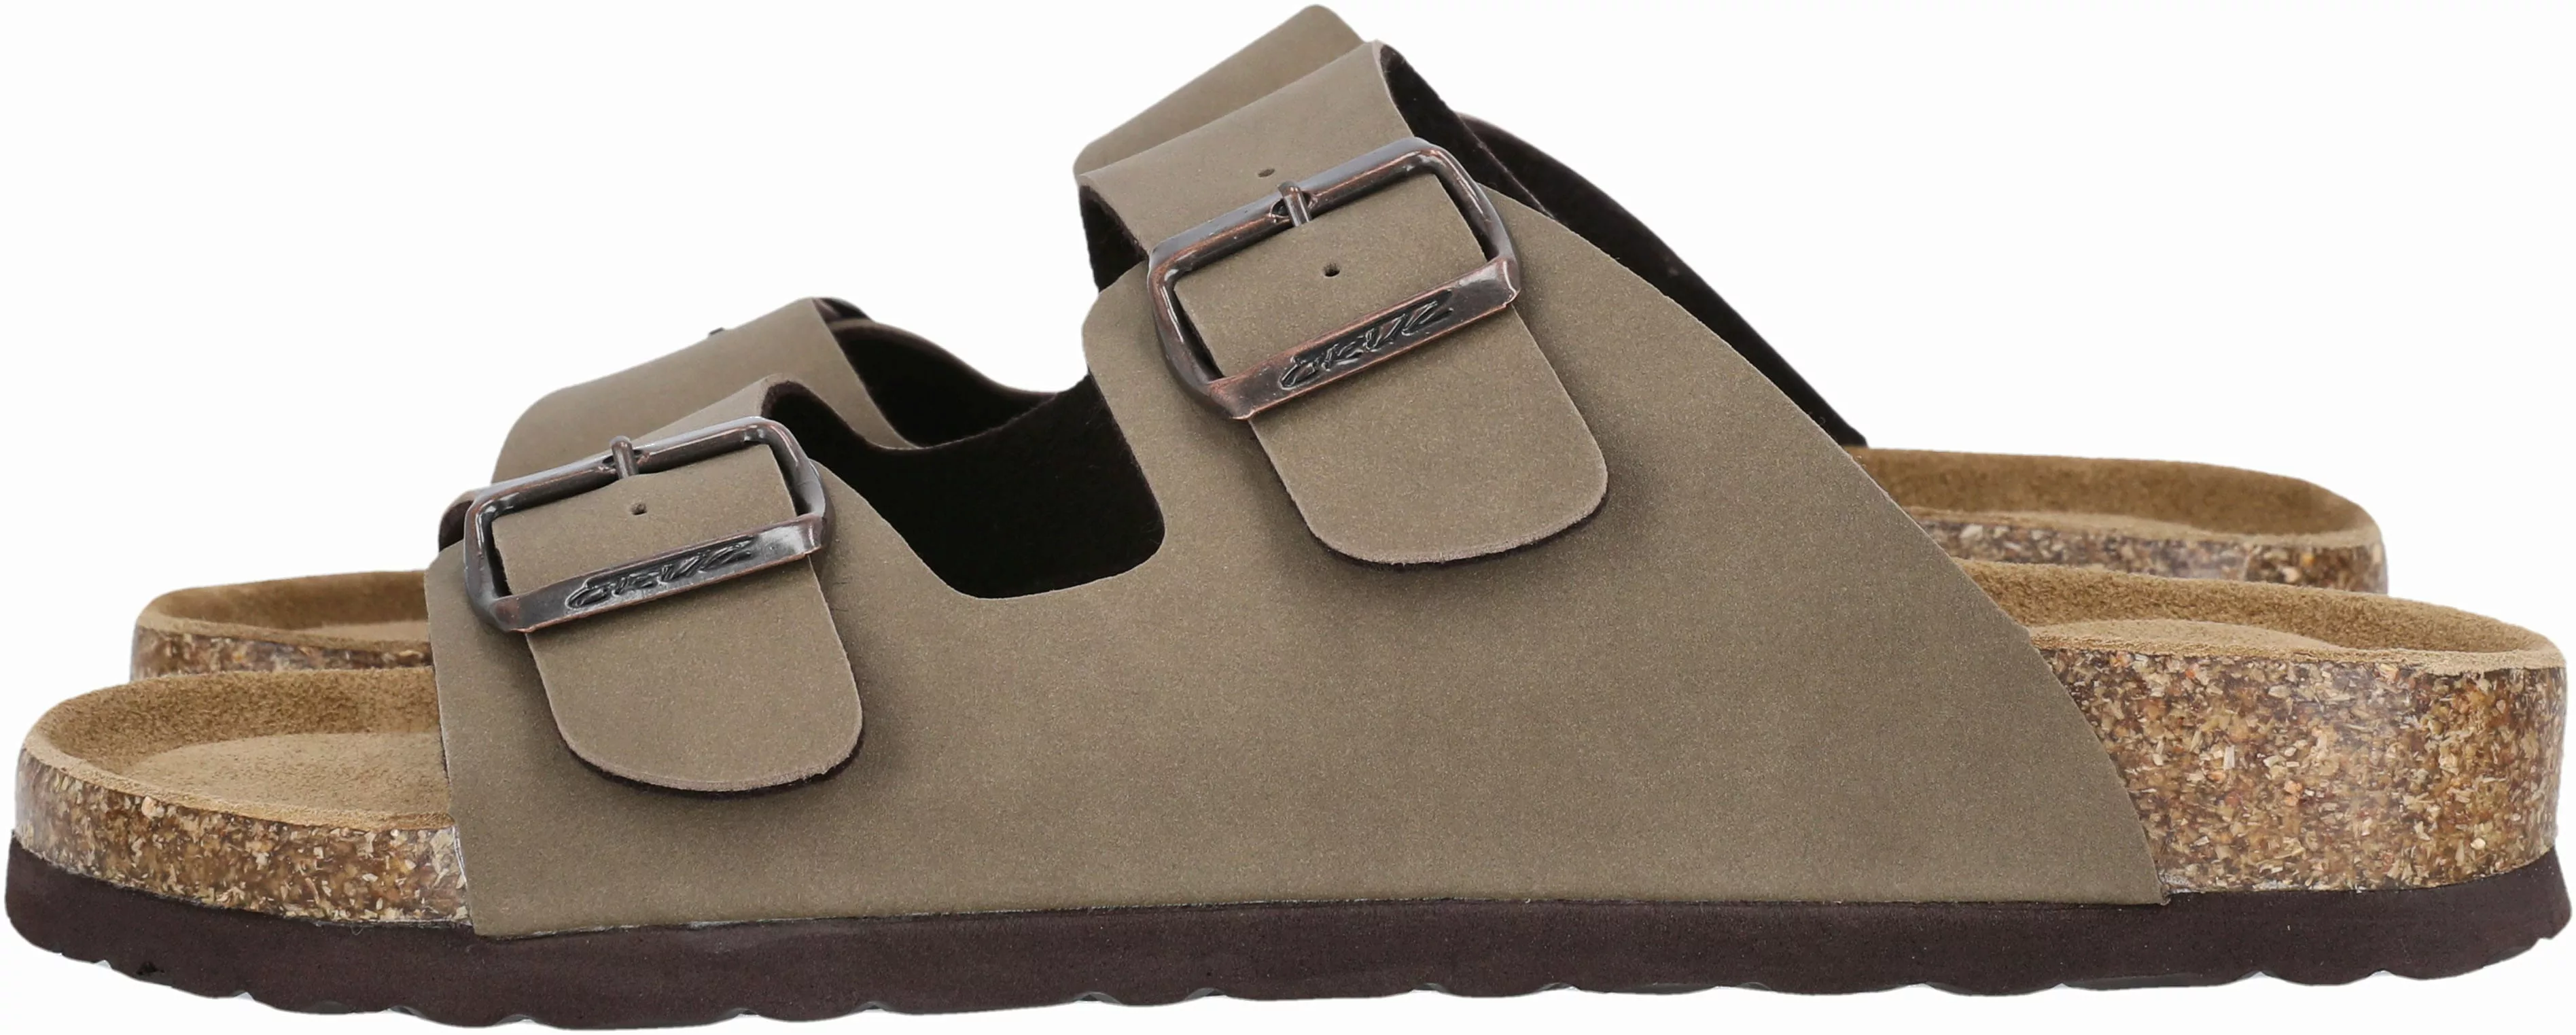 CRUZ Sandale "Shawnee M cork sandal" günstig online kaufen